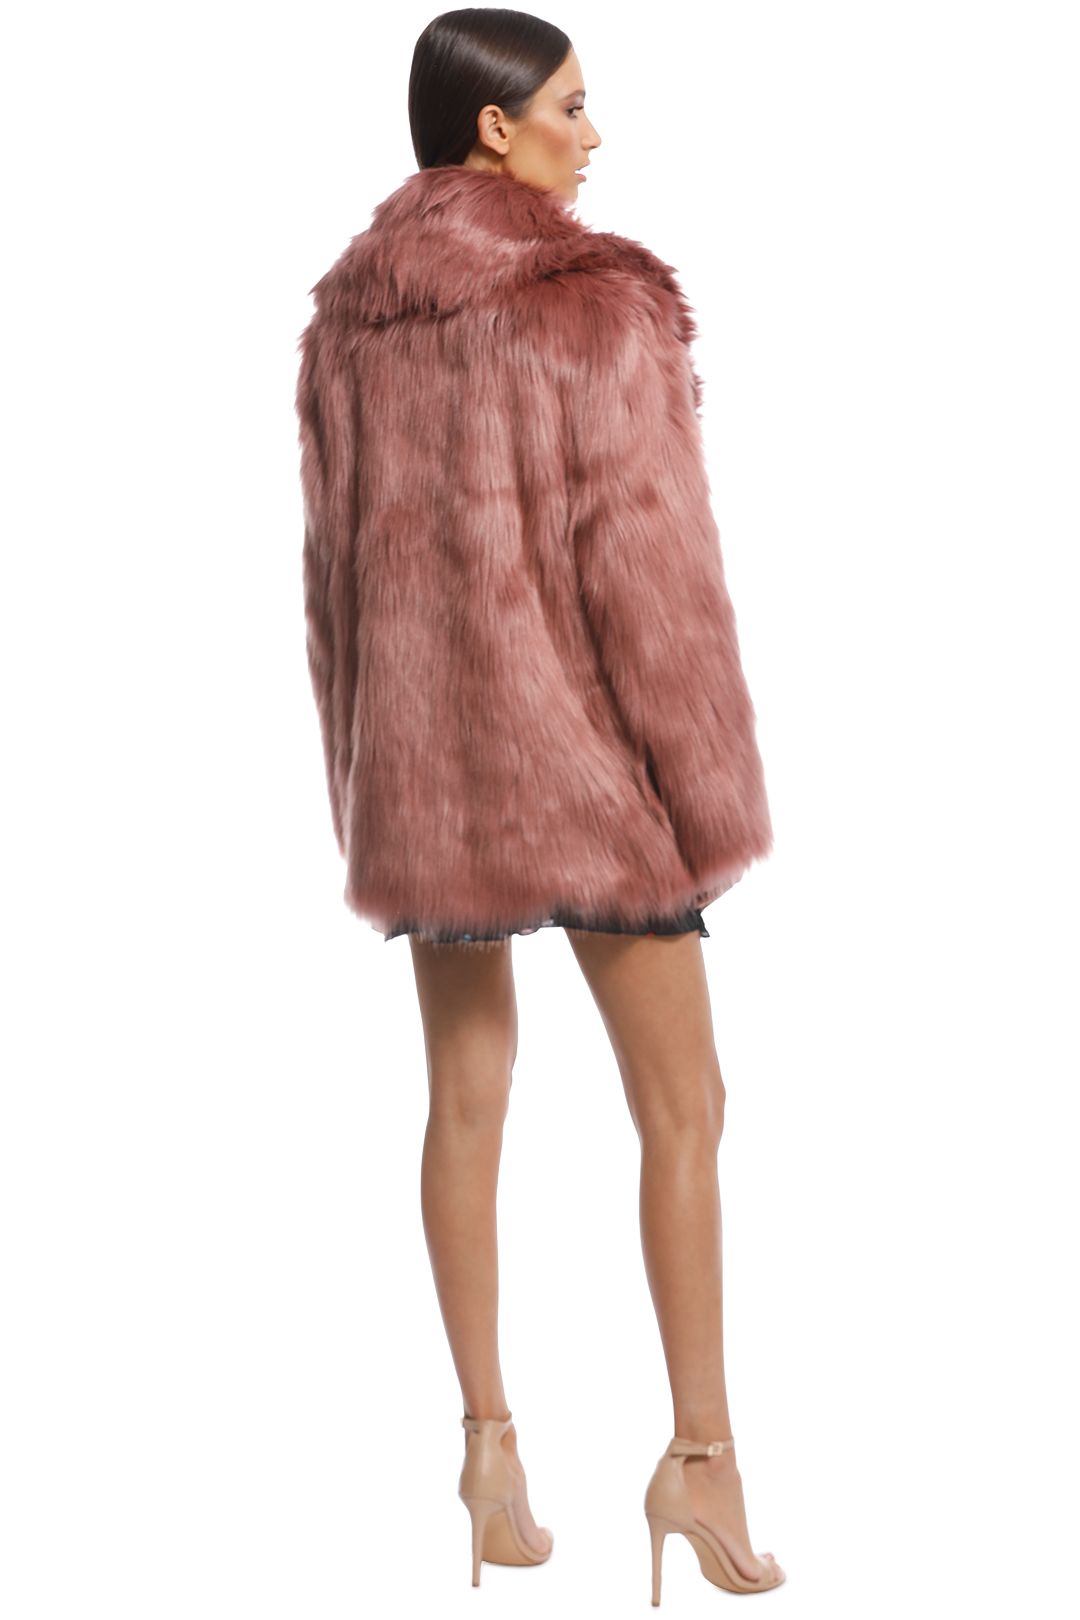 Unreal Fur - Premium Rose Jacket - Evening Rose - Back